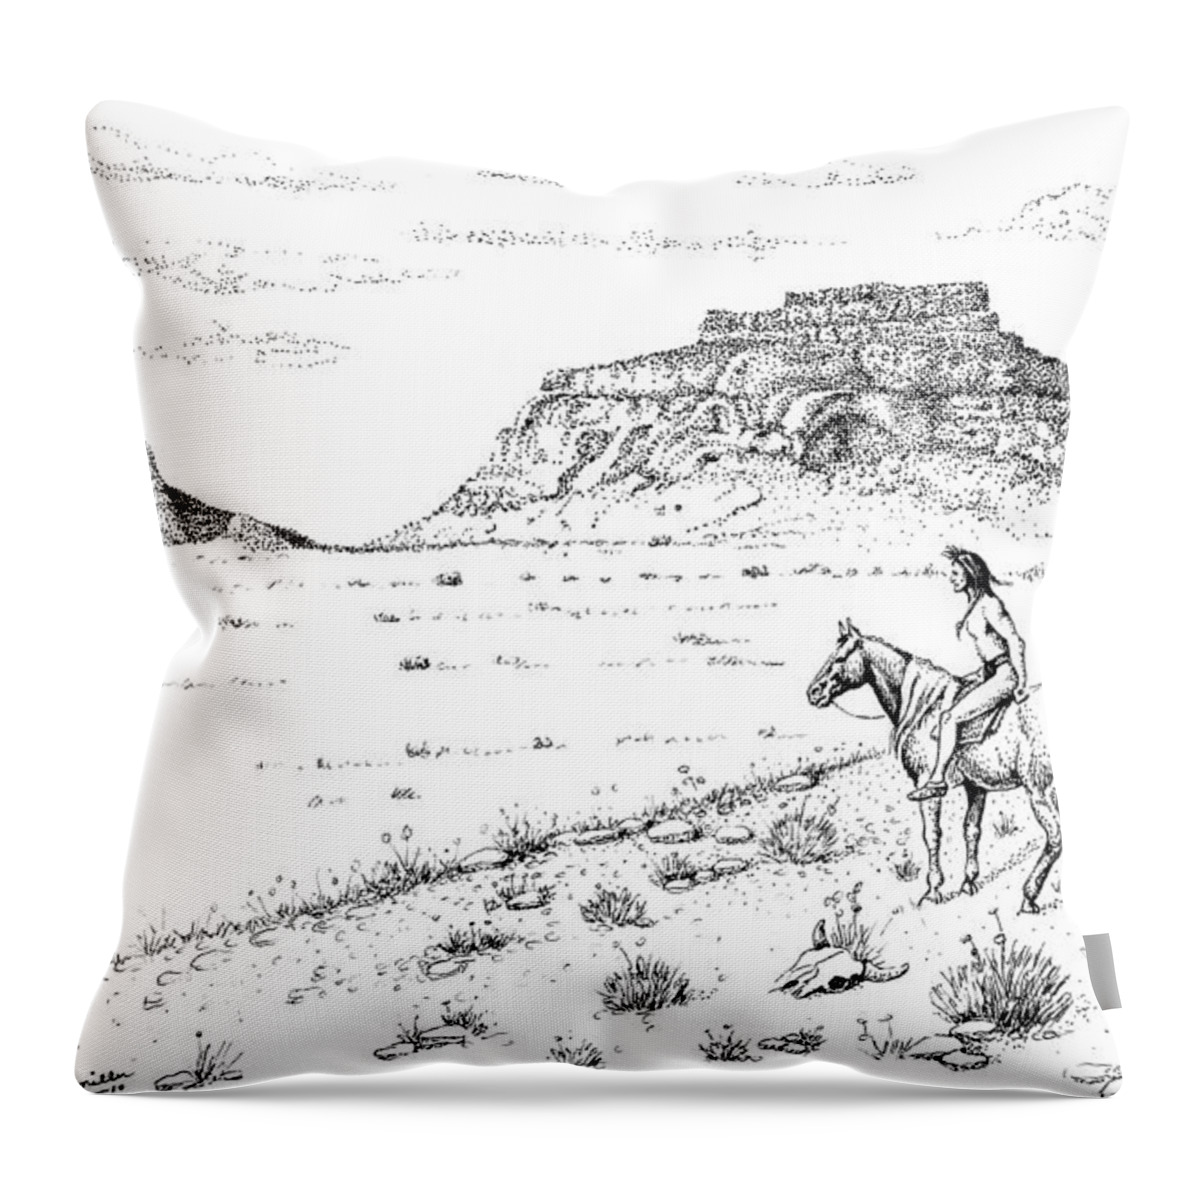 Art Throw Pillow featuring the drawing Open Prairie Overlook by Bern Miller